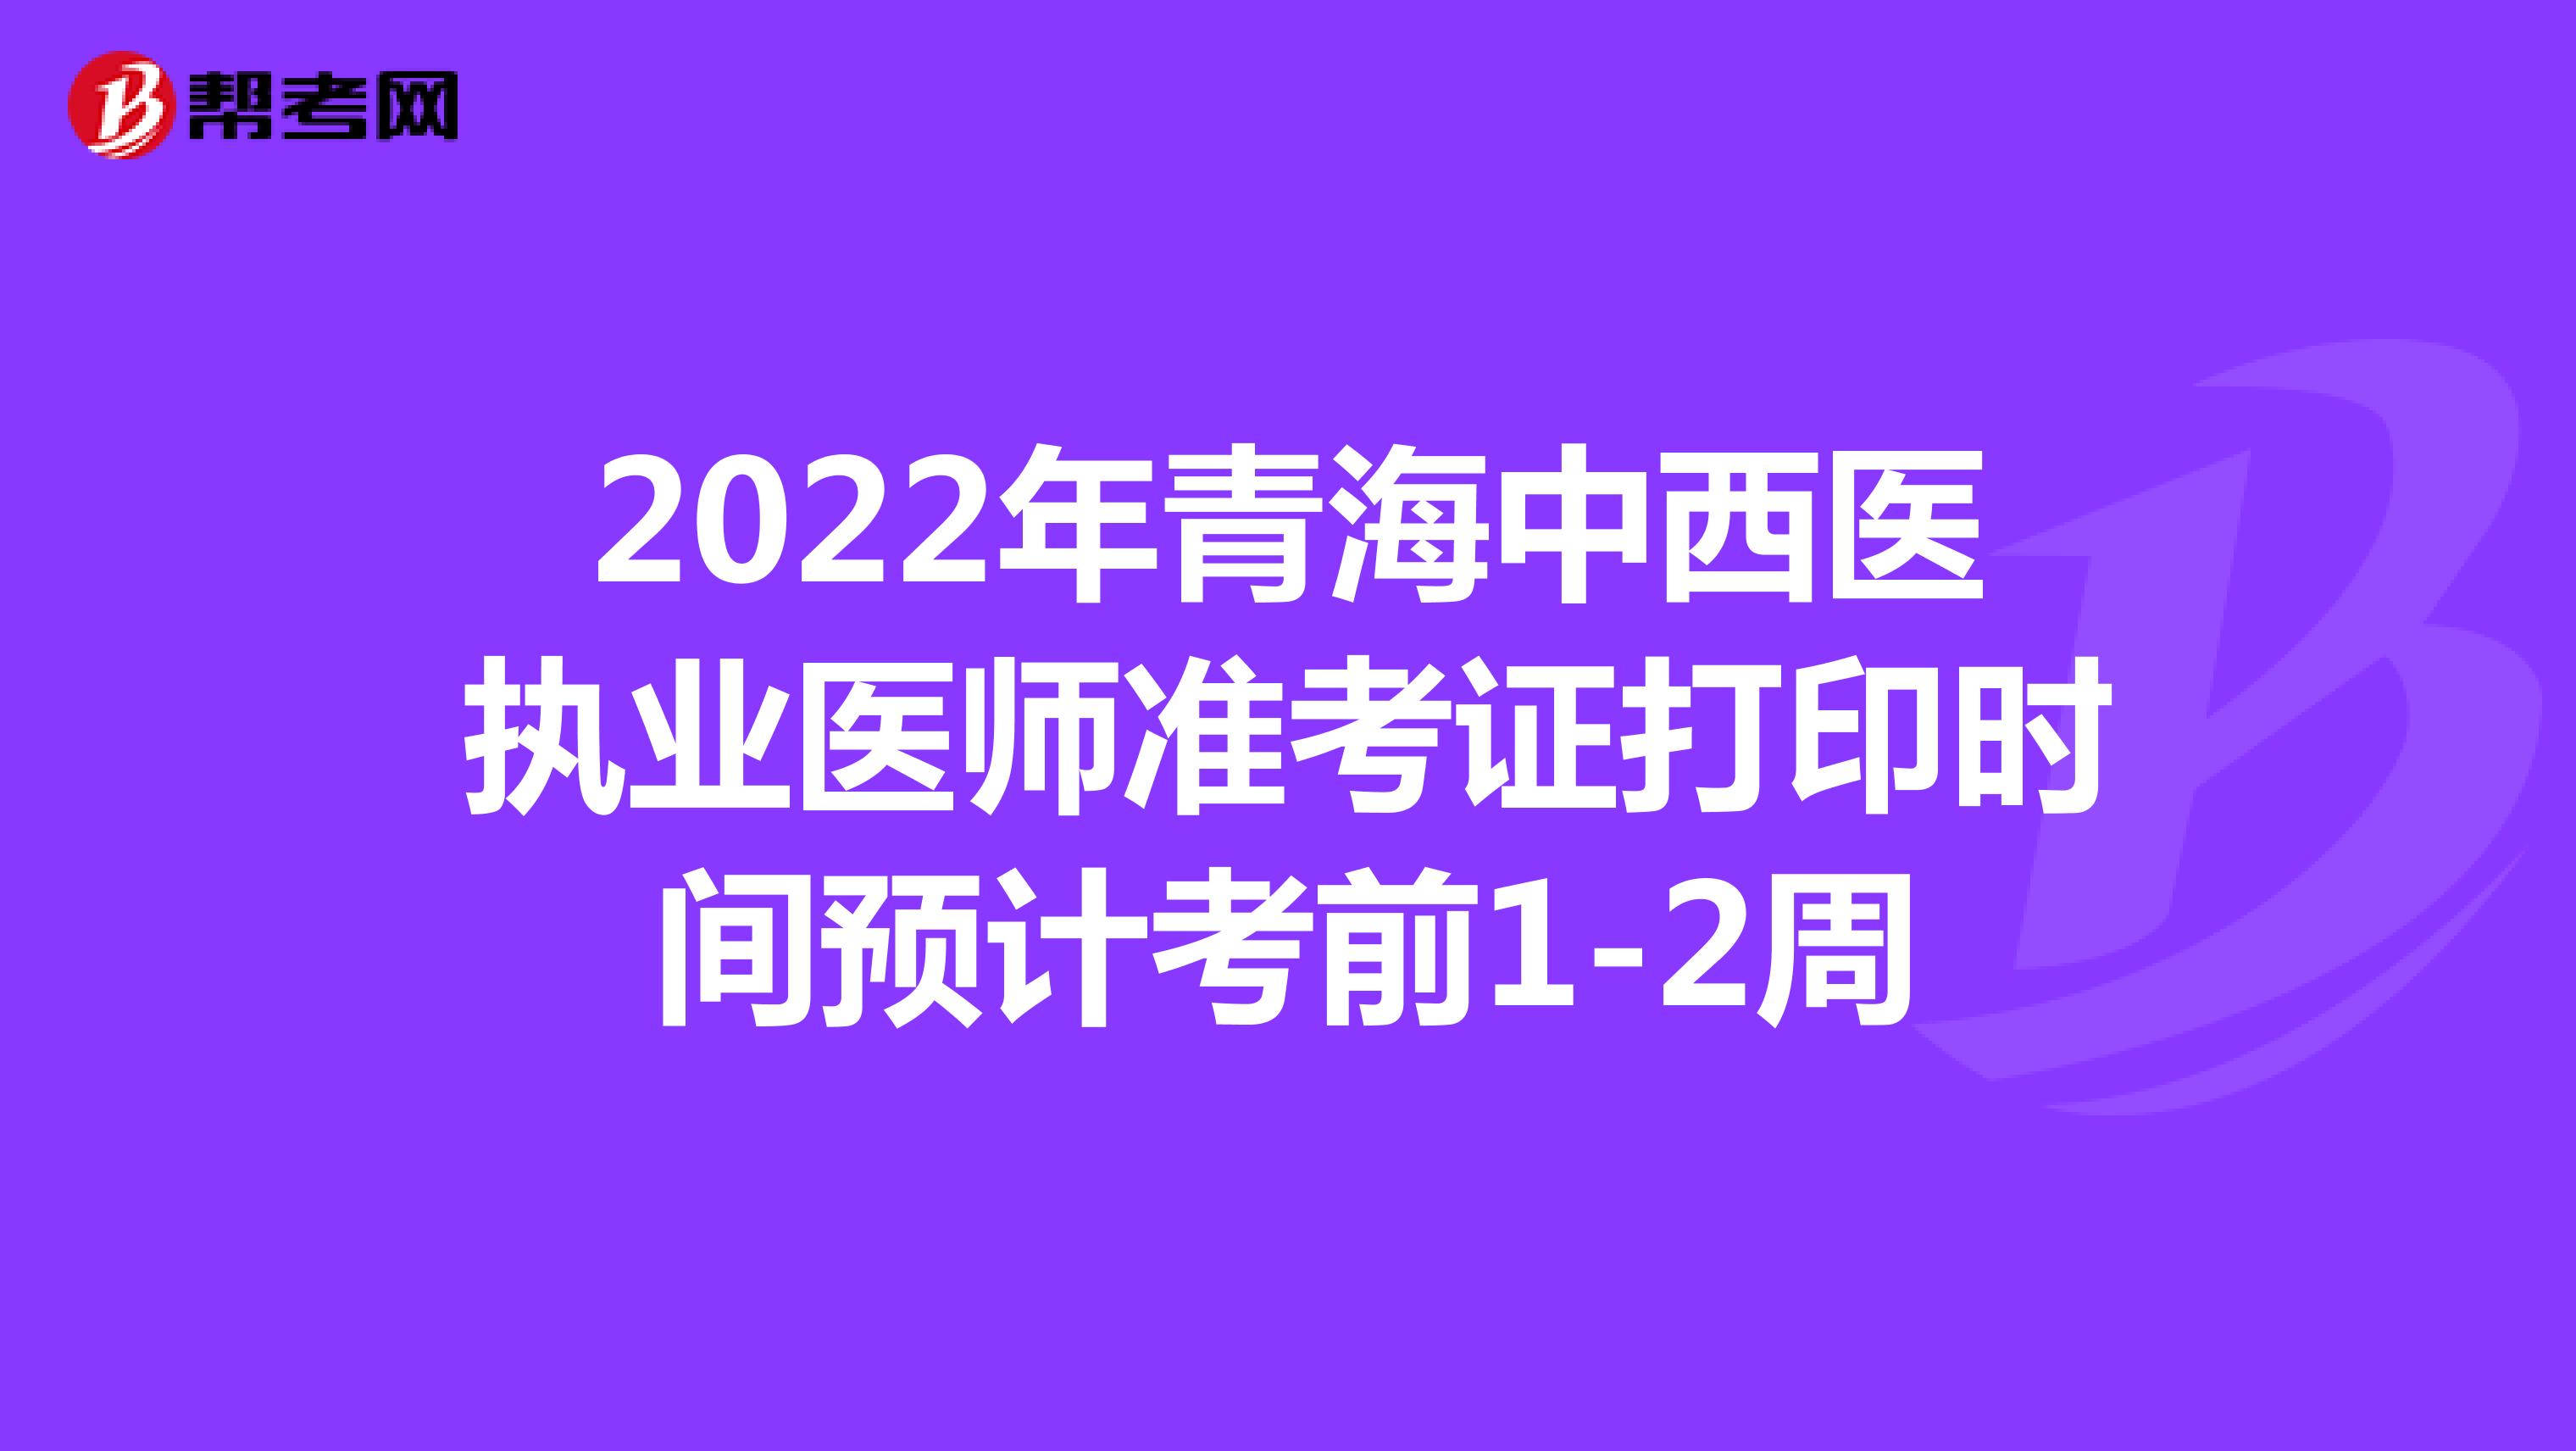 2022年青海中西医执业医师准考证打印时间预计考前1-2周